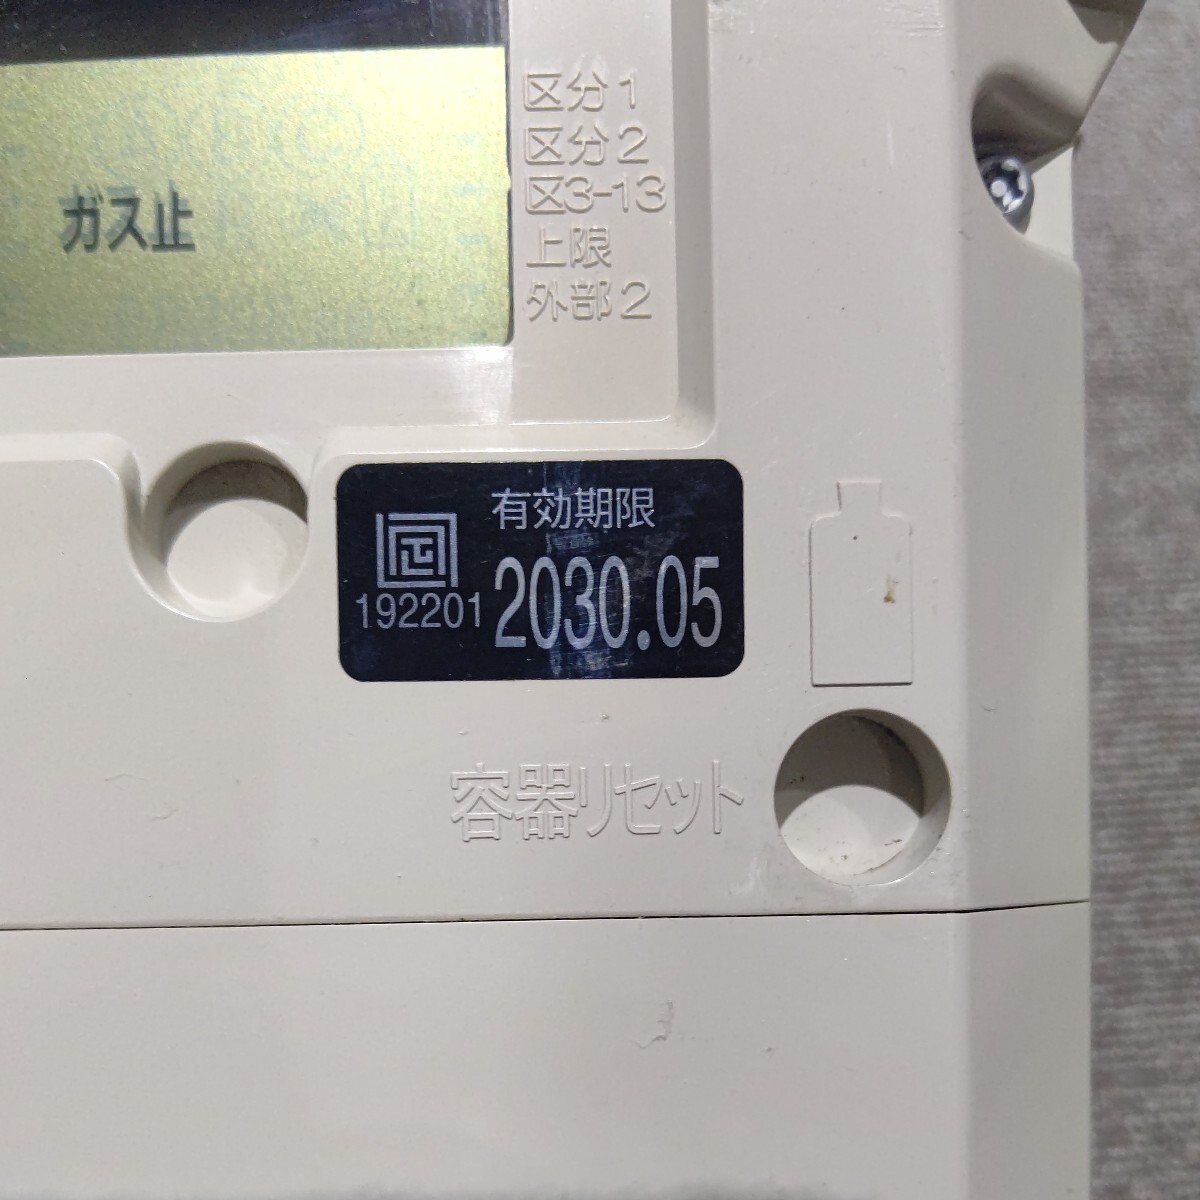 矢崎 YAZAKI ヤザキ プロパンガス用 ガスメーター SY25MT1 交換期限 2030年 5月 メーター マイコン 900スパン 7.8_画像2